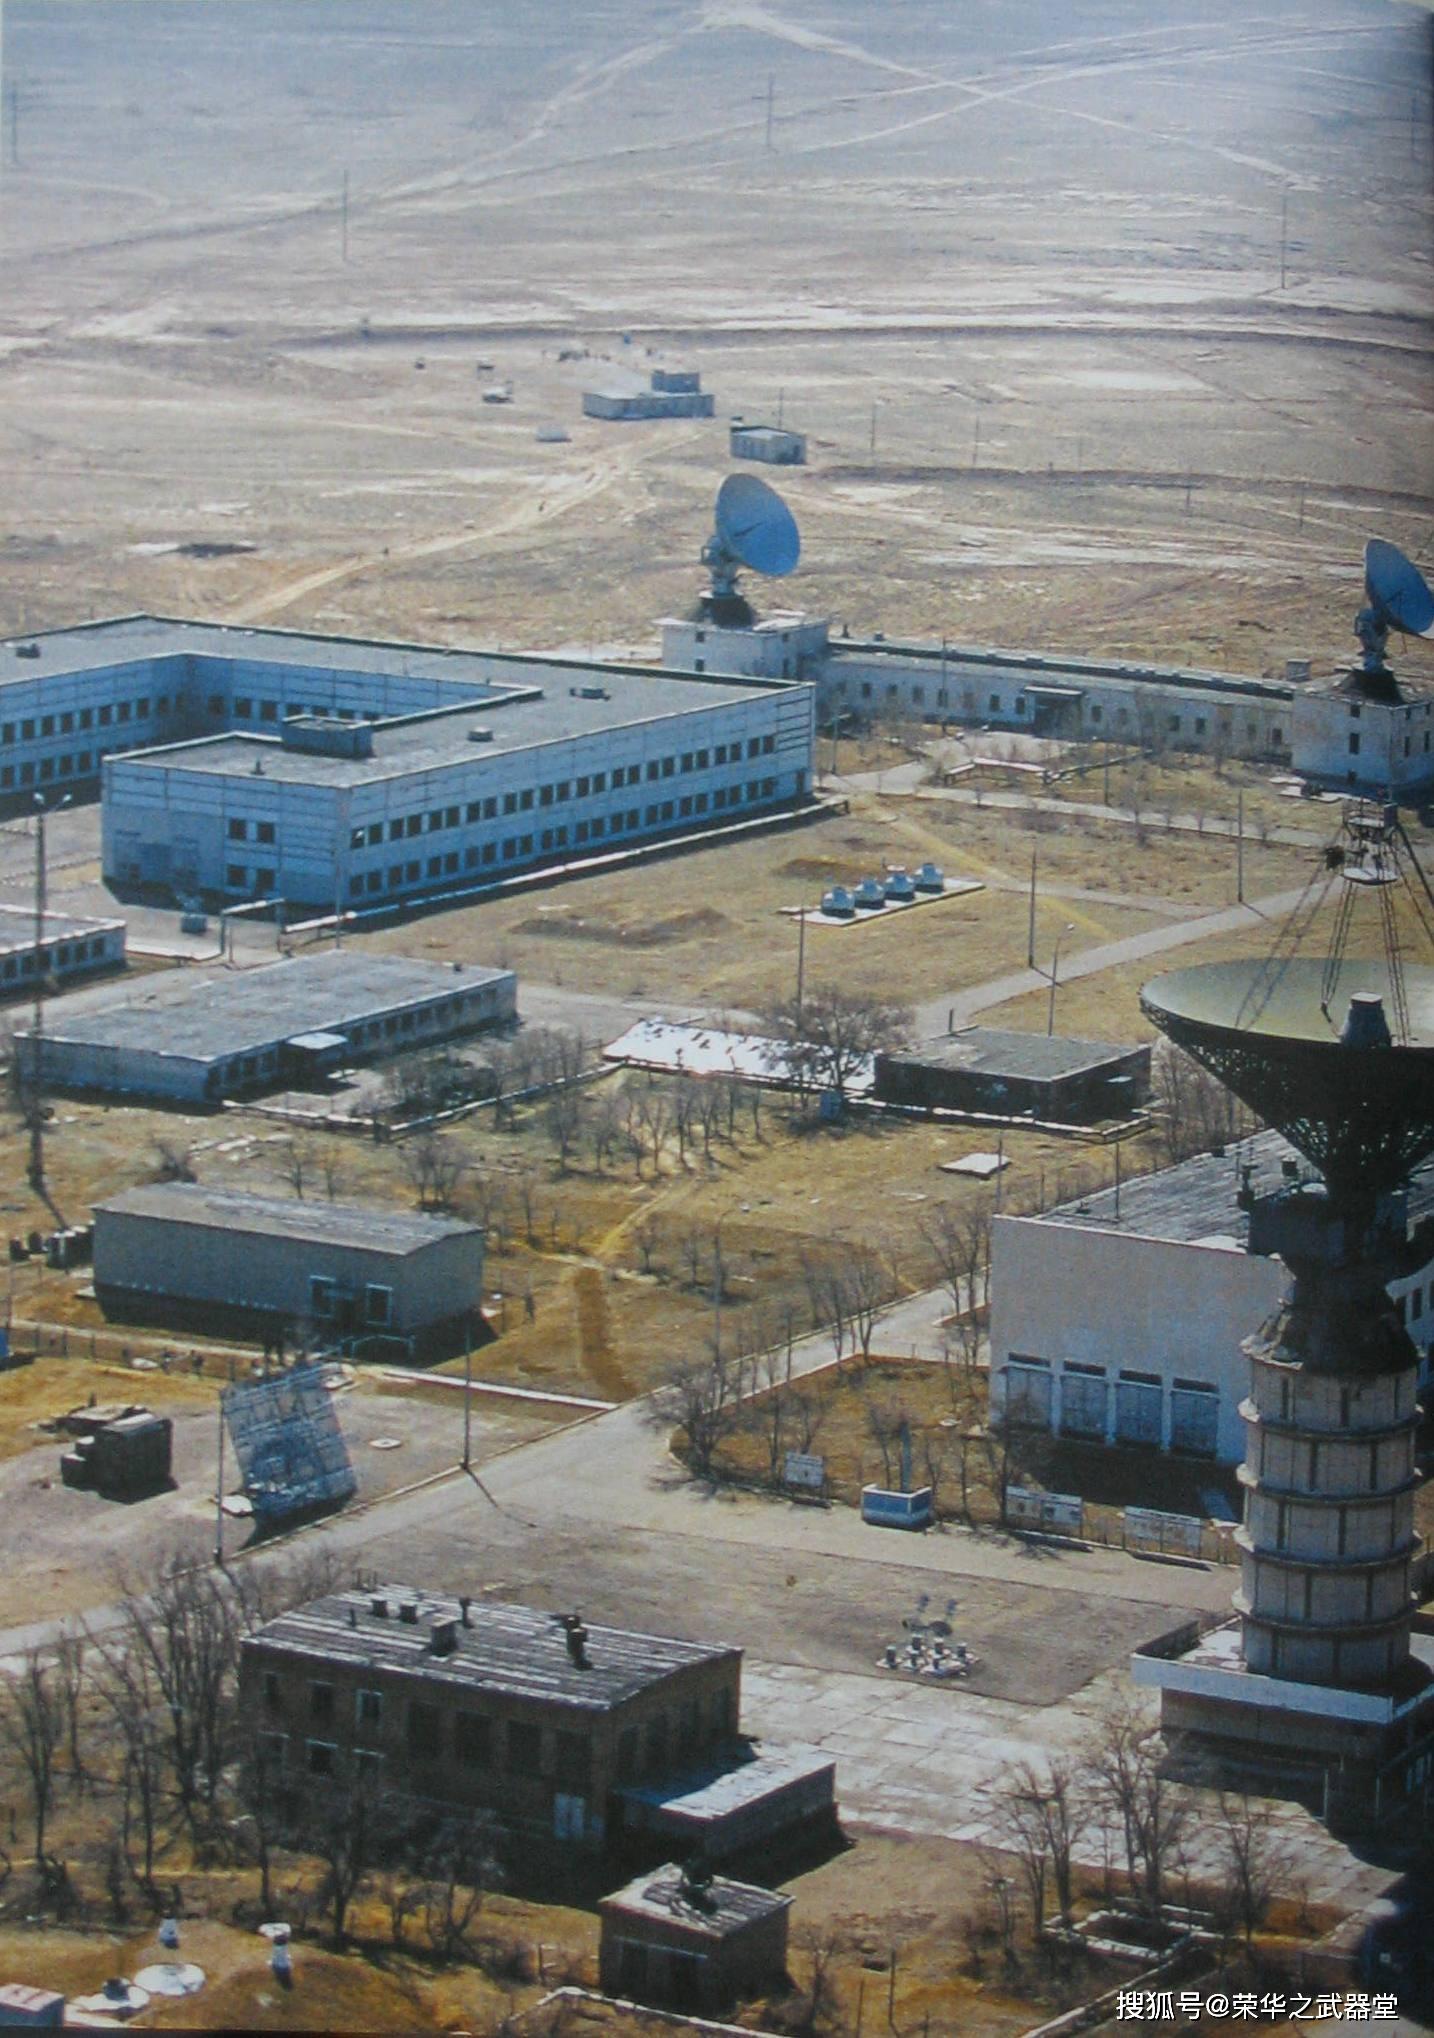 拜科努尔航天发射场整个航天中心布局呈y形,共拥有9个航天运载火箭